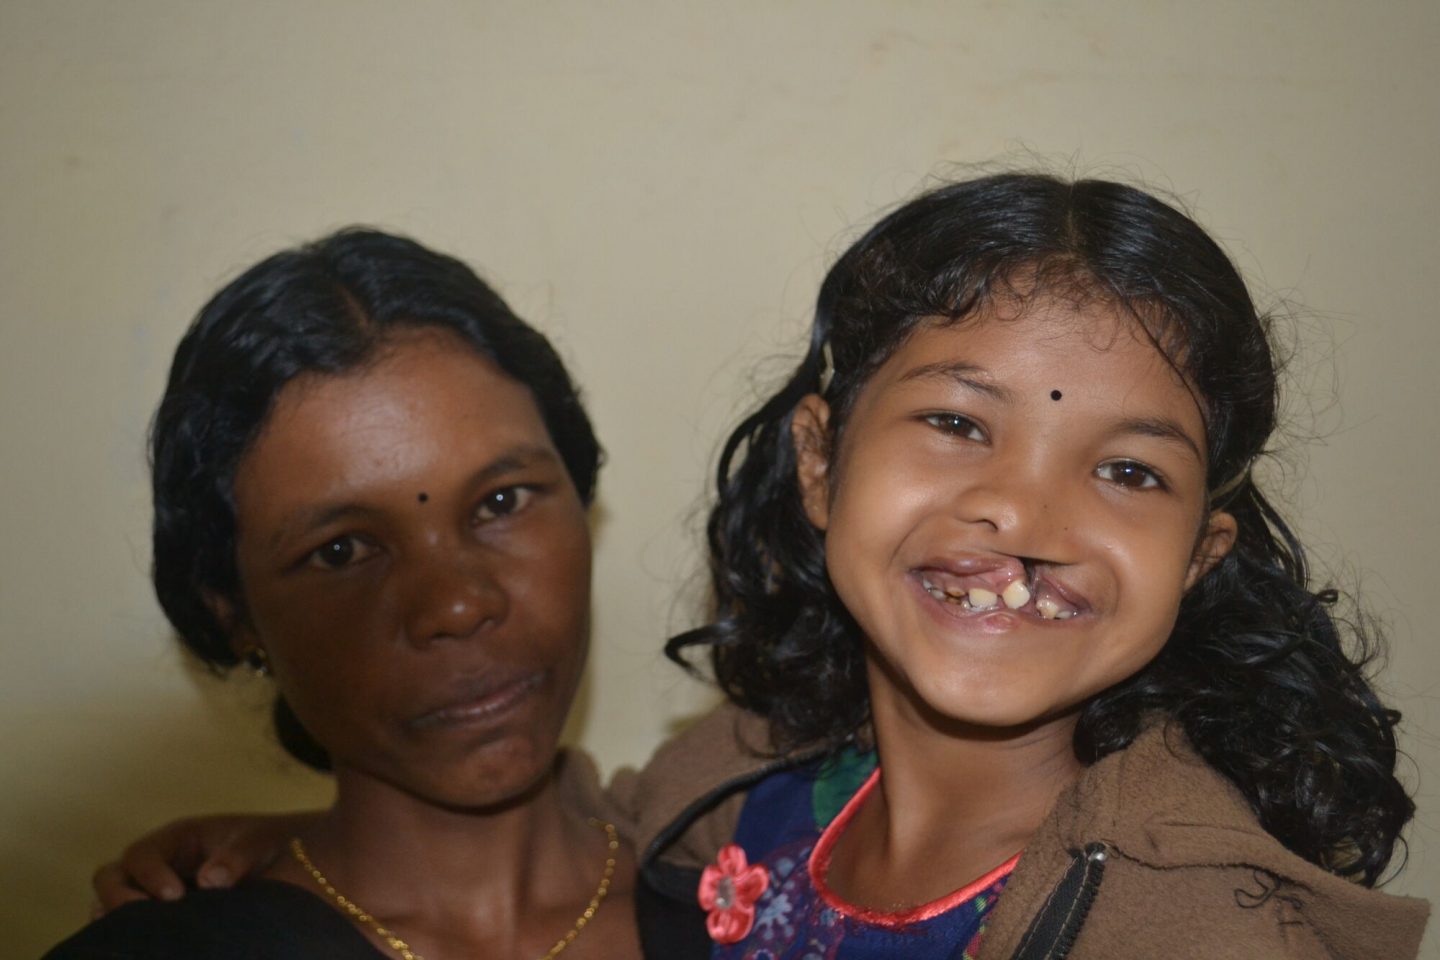 Soorya und ihre Mutter vor der Operation für Soorya's Lippenspalte.